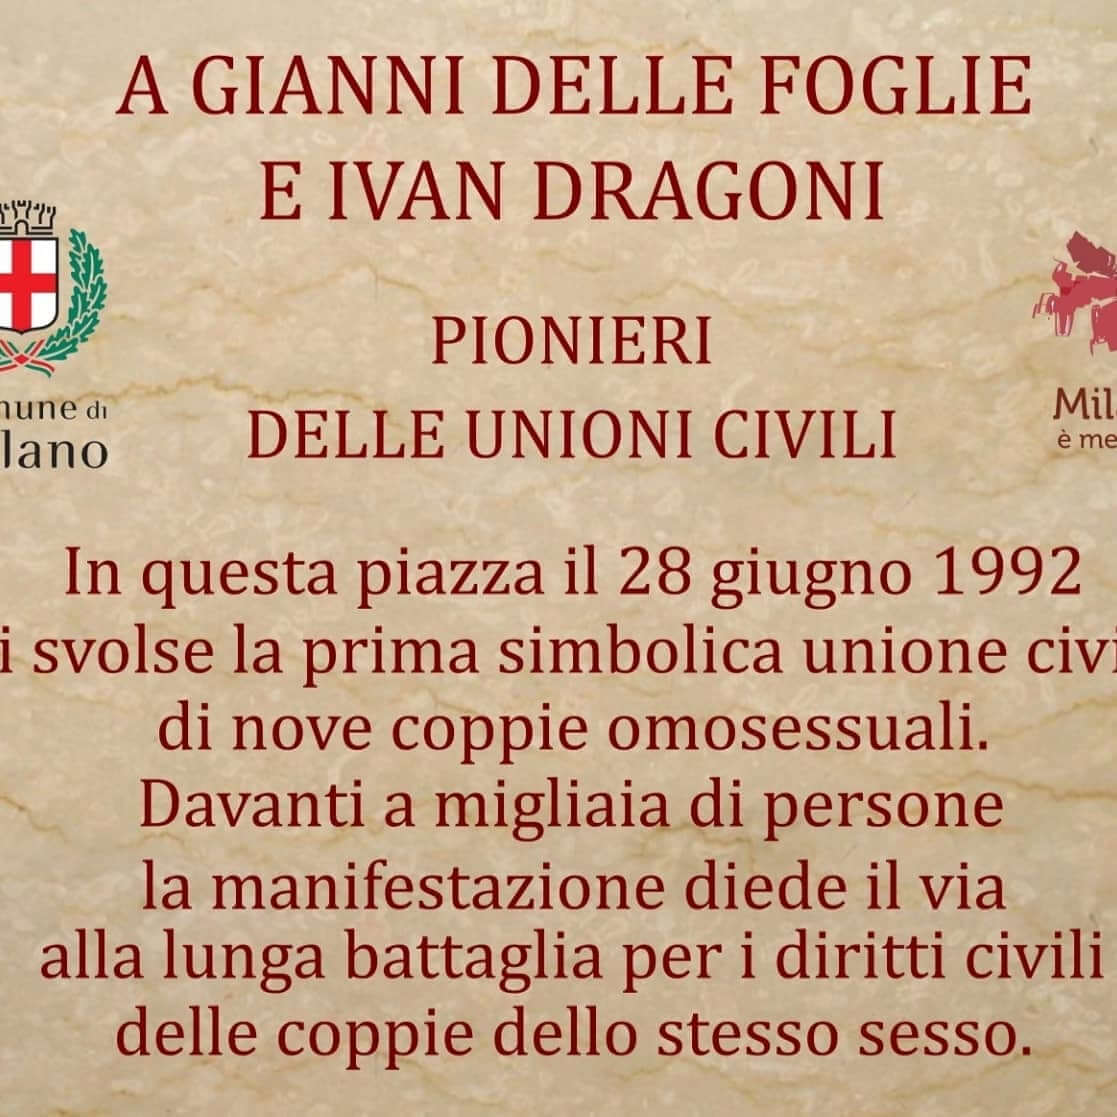 Milano, inaugurata targa in memoria di Gianni Delle Foglie e Ivan Dragoni, pionieri delle unioni civili - 206565981 344605720361995 7763137082425646450 n 1 - Gay.it